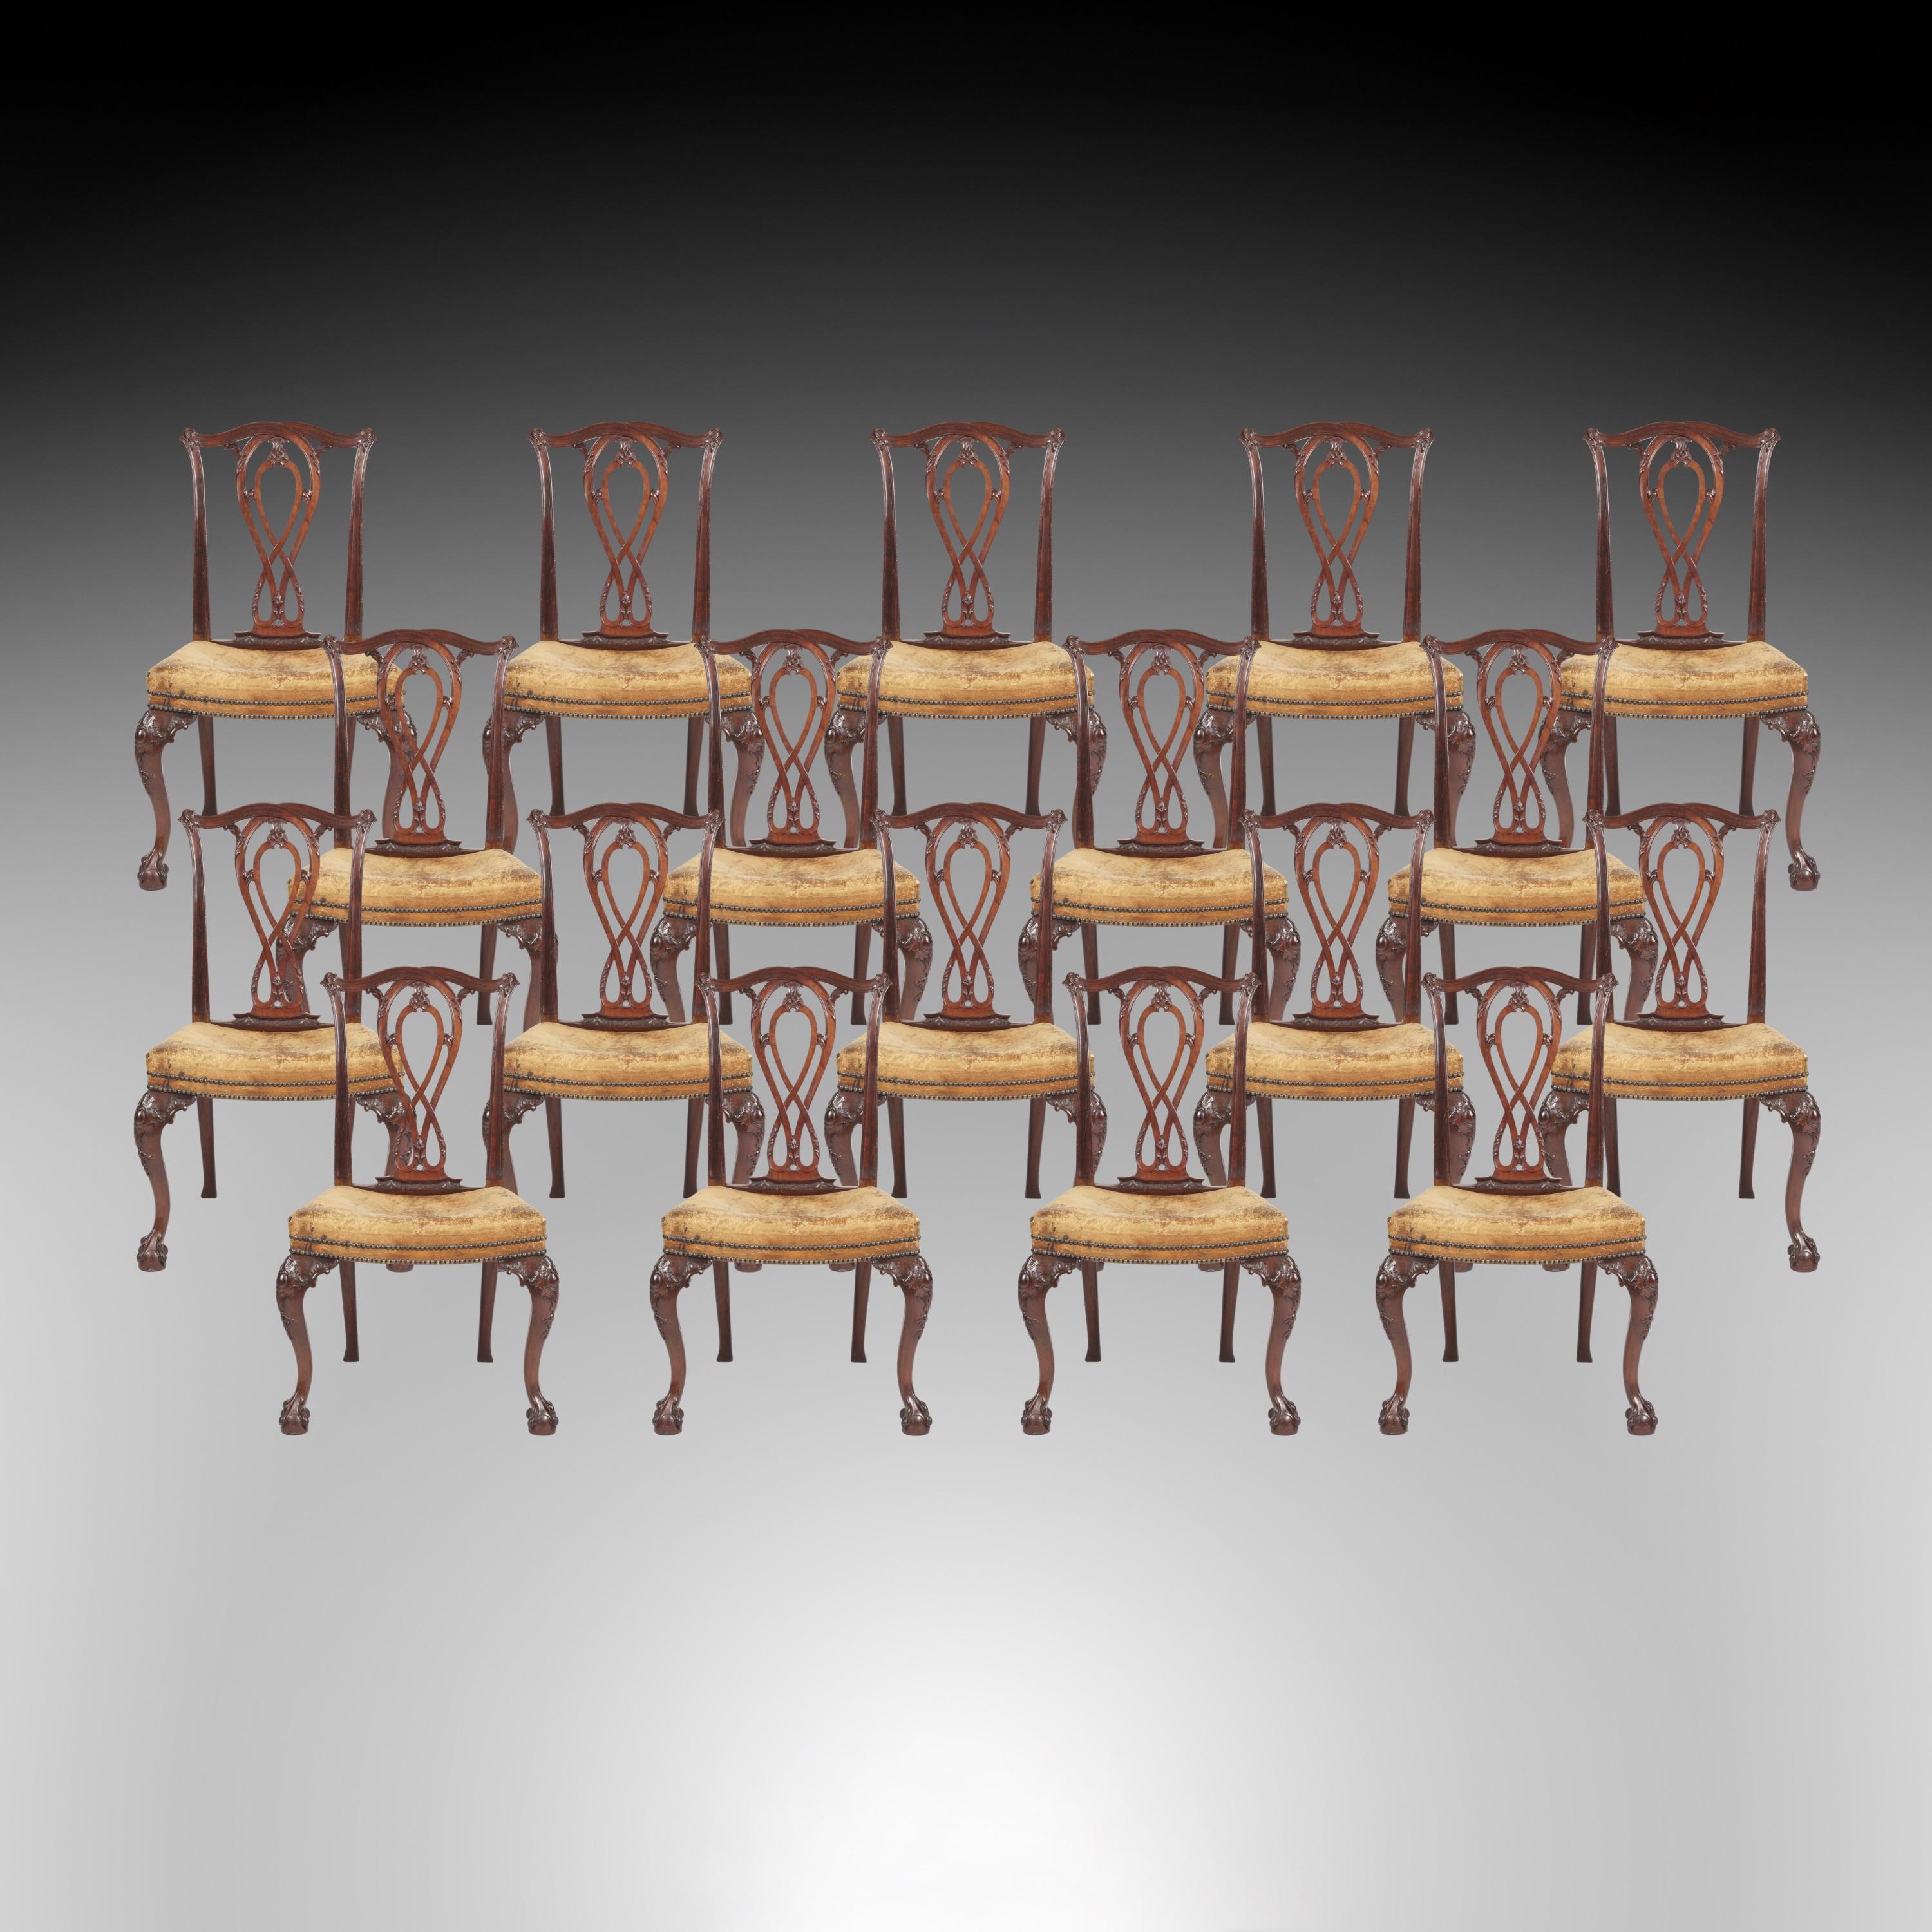 Ein langer Satz von achtzehn Esszimmerstühlen im frühen georgianischen Stil

Konstruiert in Mahagoni, nach einem Entwurf von Robert Manwaring; erhebt sich von Kugel und Klaue Kabriole Beine, mit foliate geschnitzt Ohren, mit Kick away Beine auf der